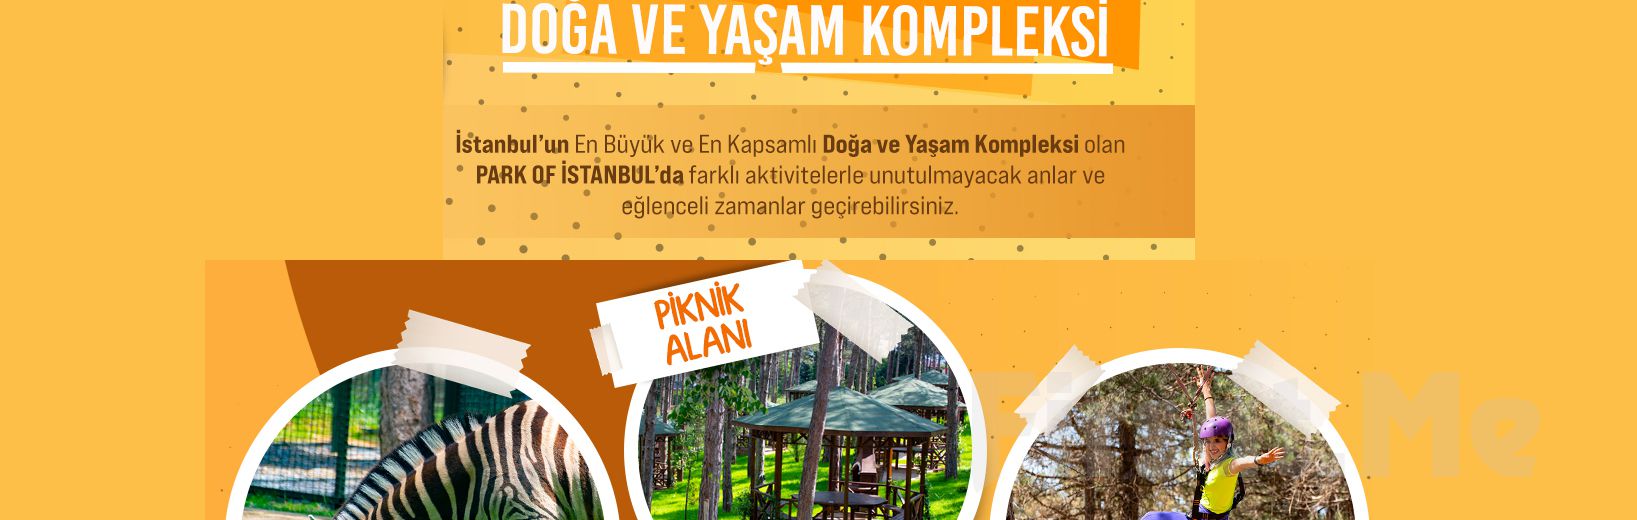 Park Of İstanbul Çekmeköy, Hayvanat Bahçesi Giriş Bileti Seçenekleri